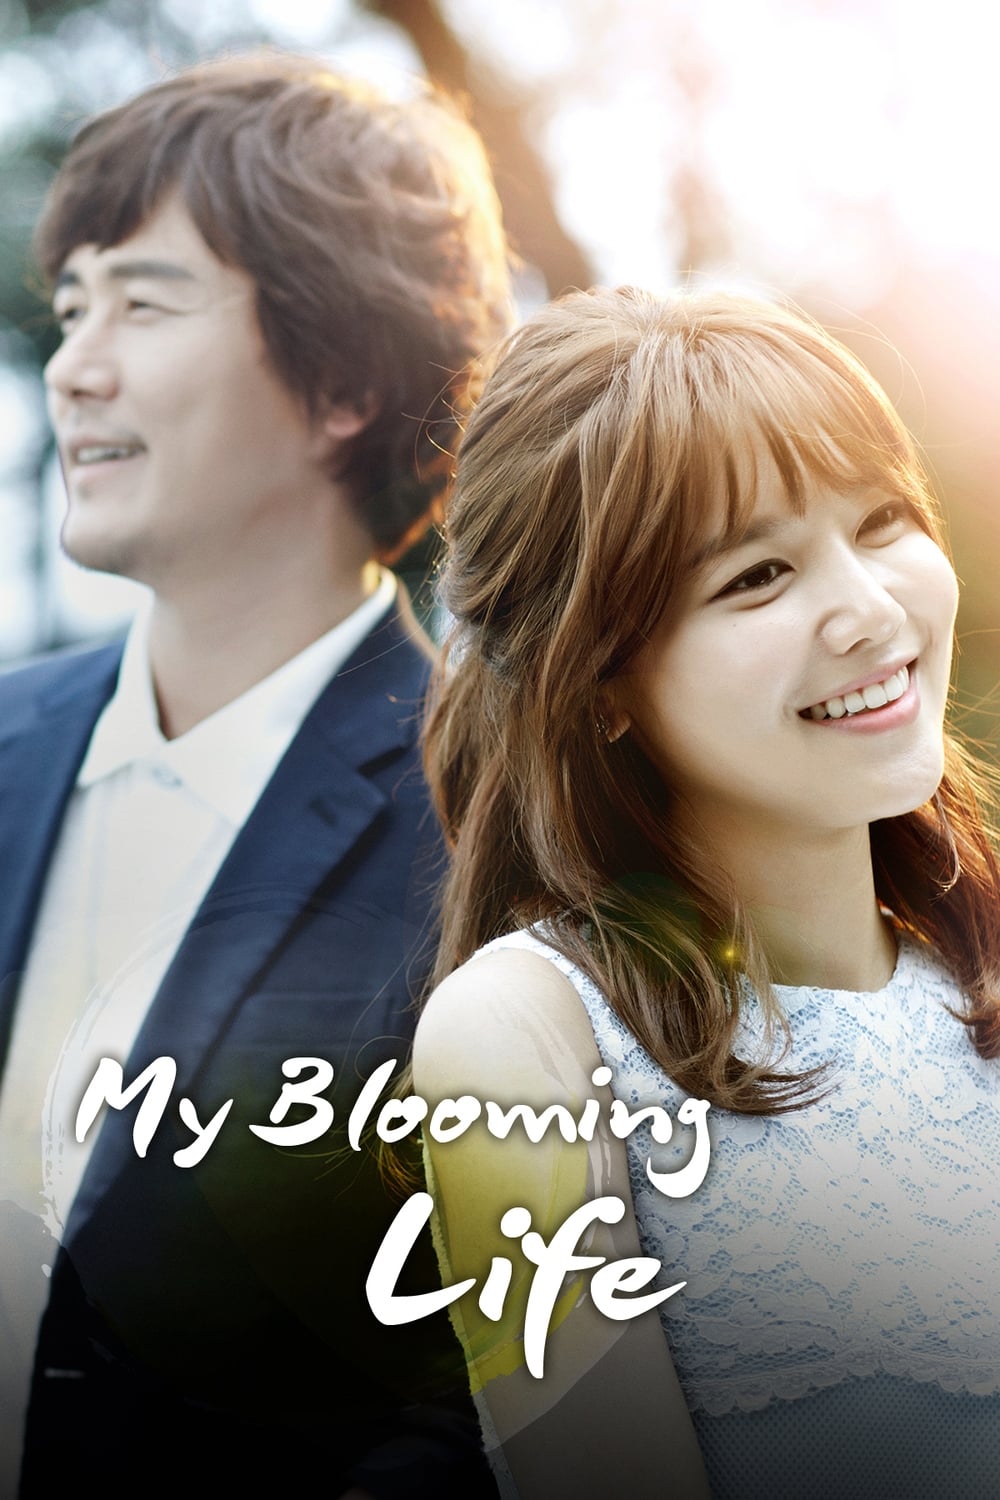 Phim Choi Soo Young: Những ngày xuân lại đến - The Spring Day of My Life (2014)